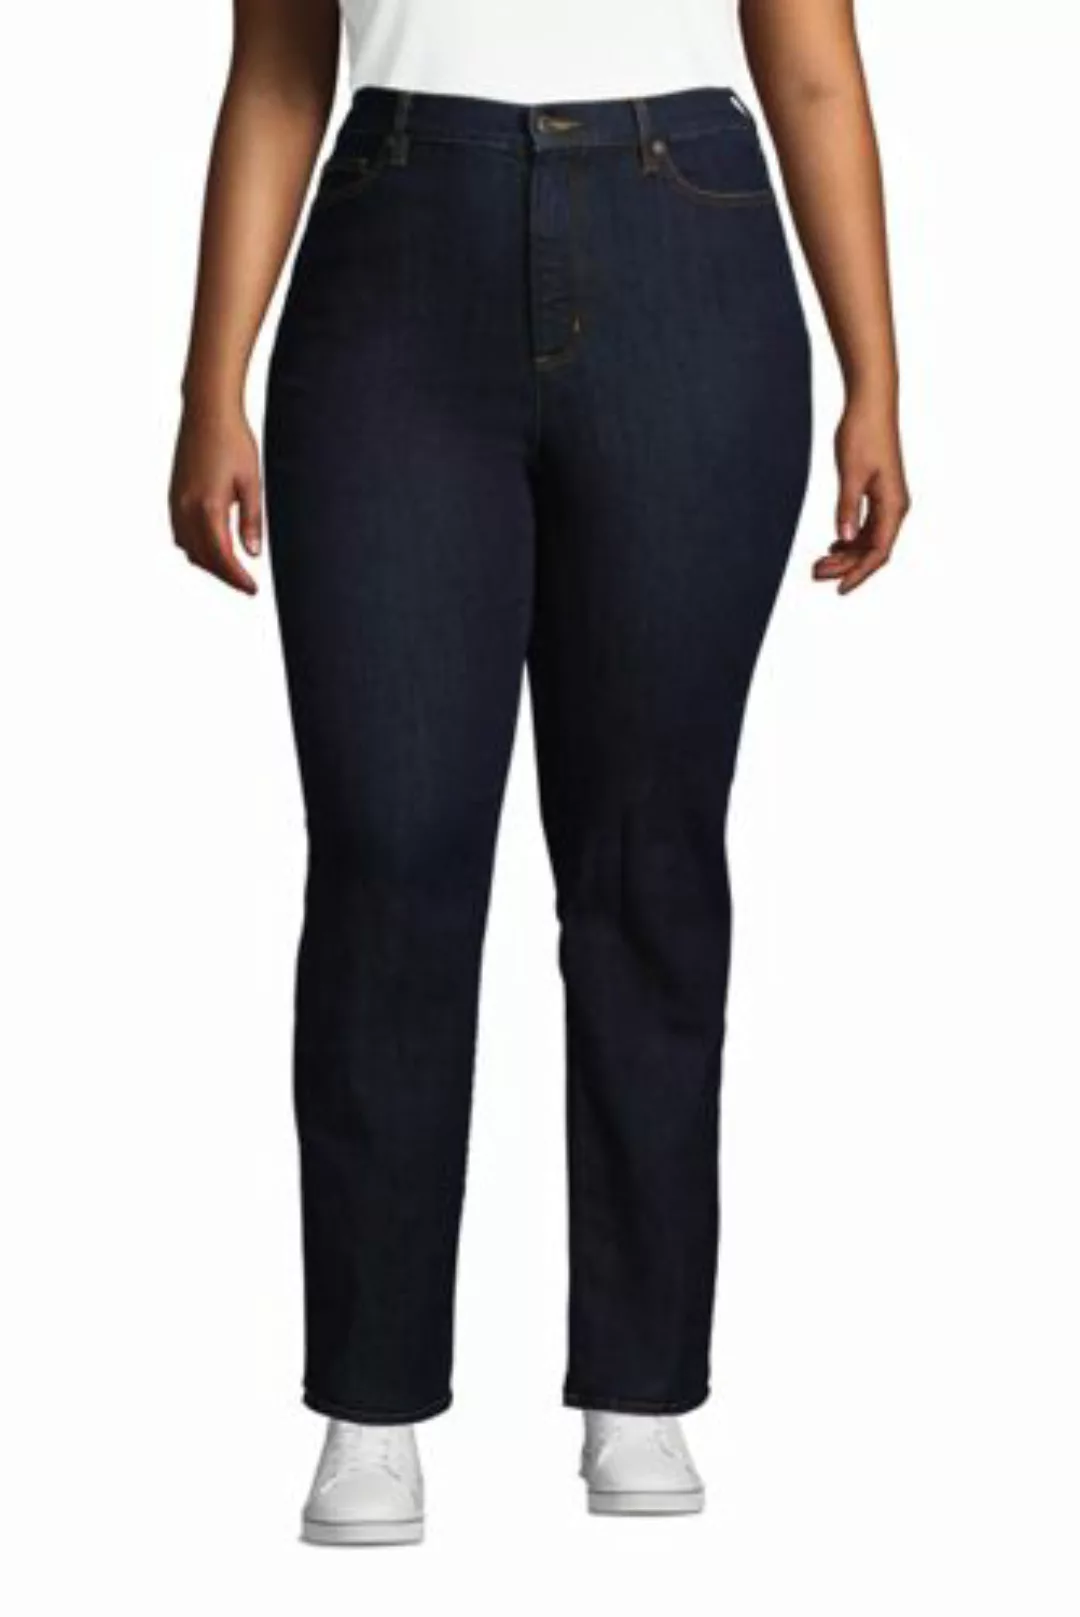 Straight Fit Öko Jeans High Waist in großen Größen, Damen, Größe: 54 30 Plu günstig online kaufen